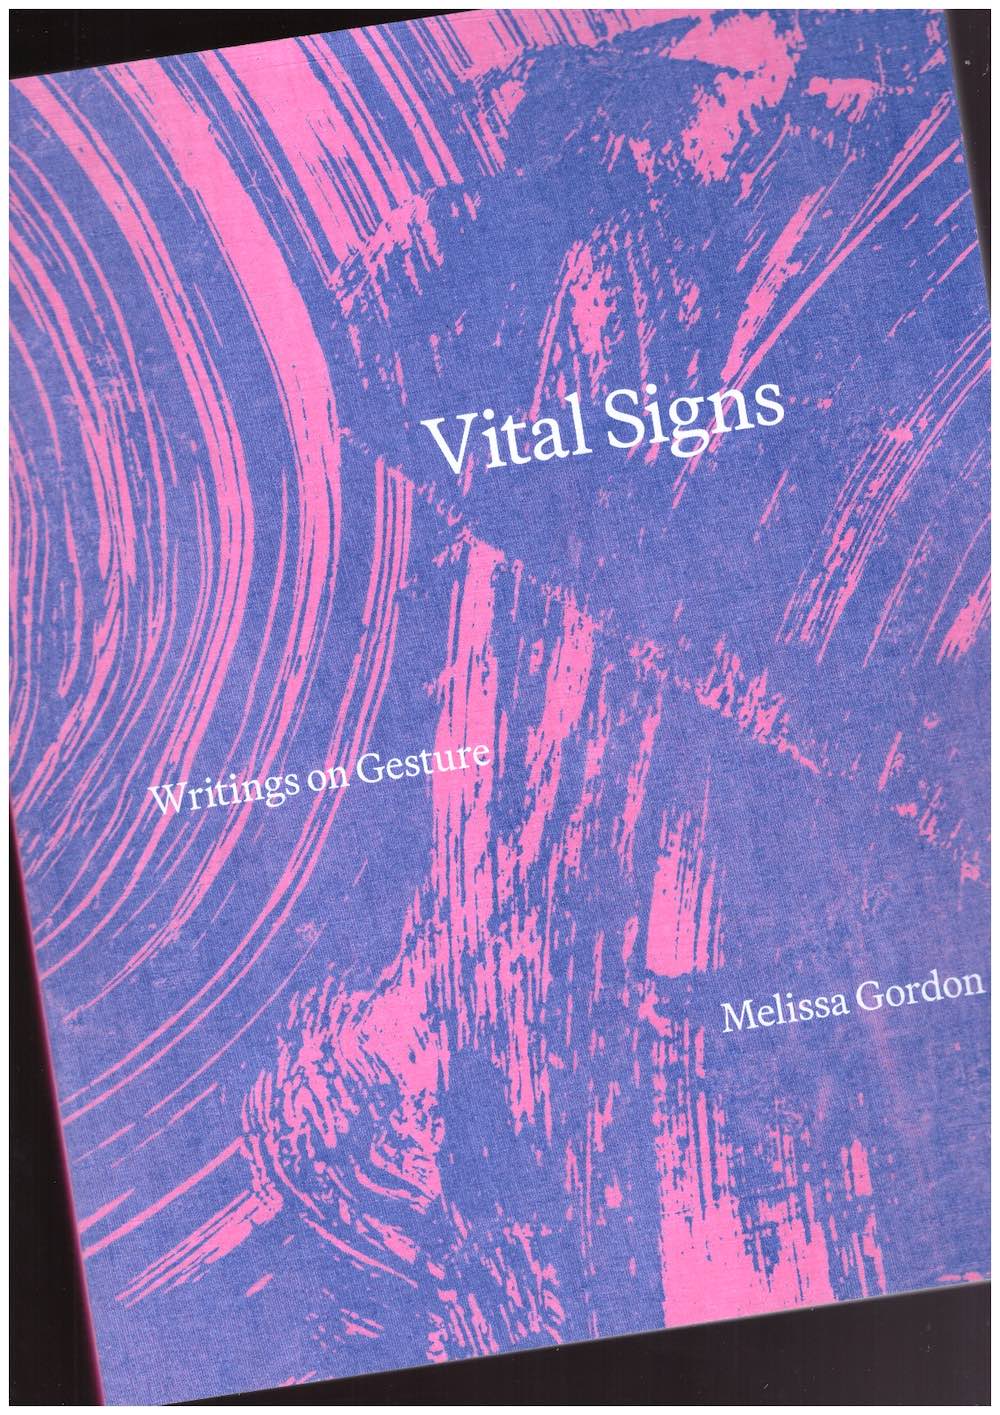 GORDON, Melissa - Vital Signs: Writings on Gesture